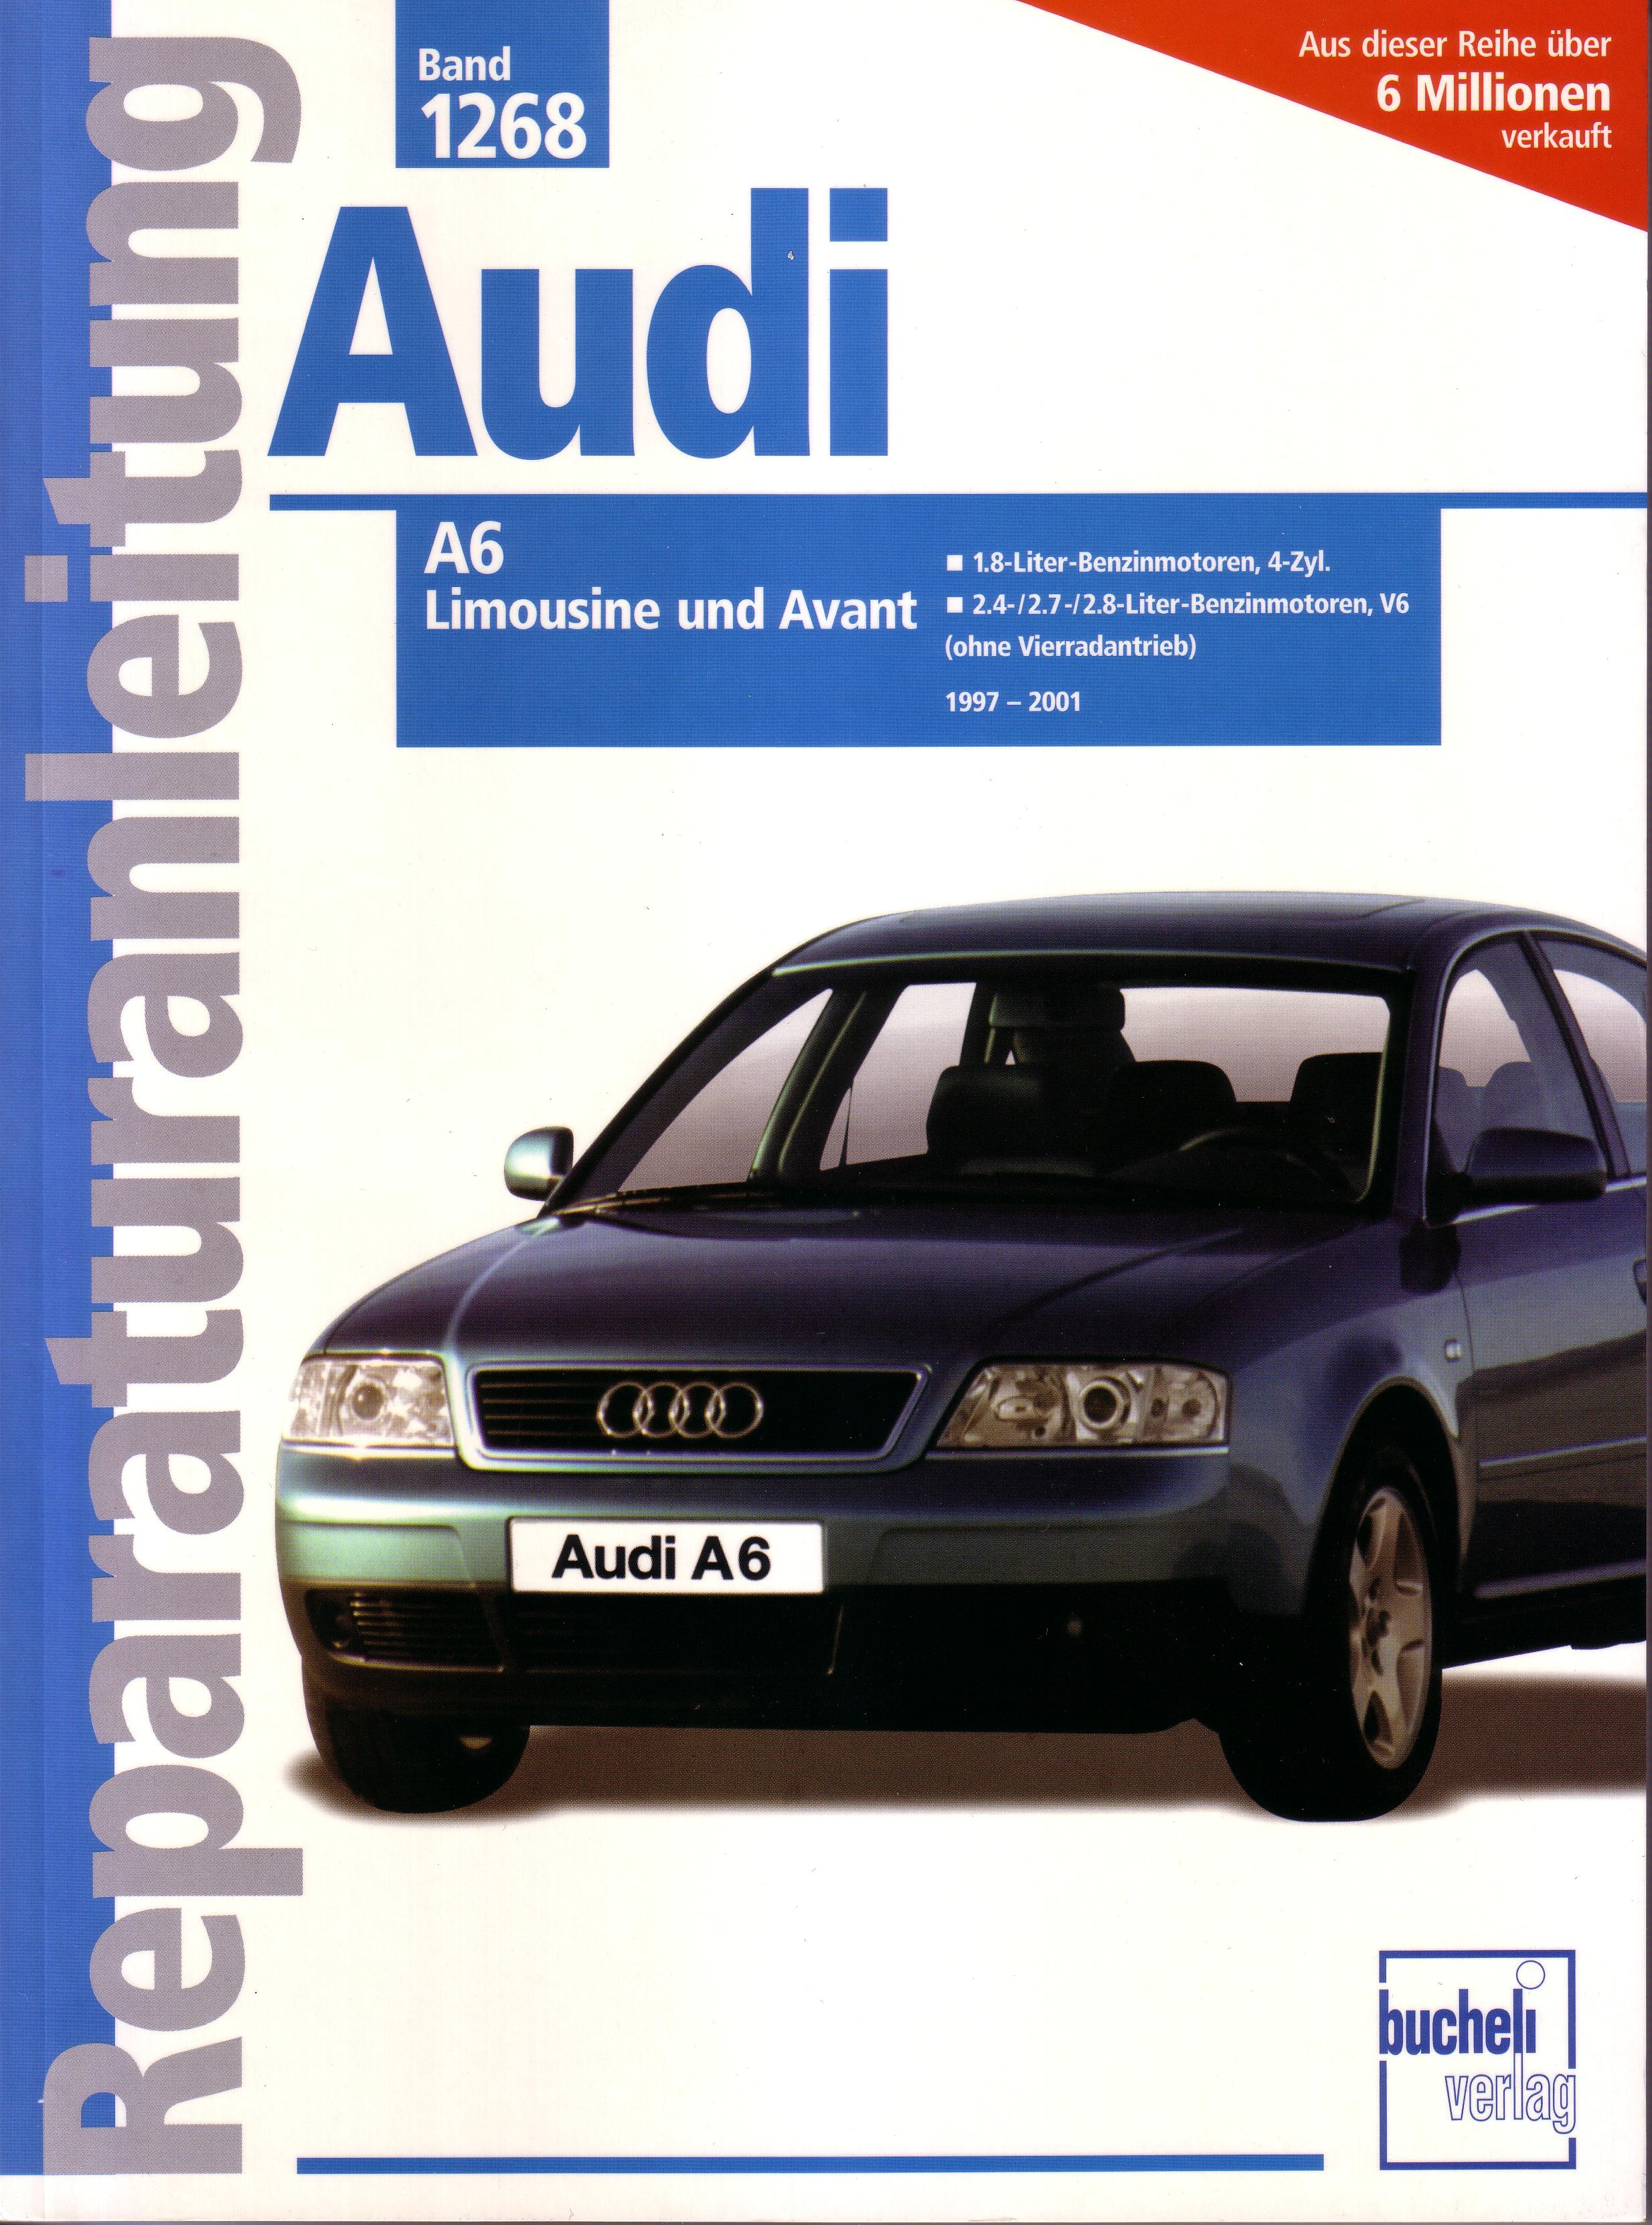 AUDI A6 LIMOUSINE UND AVANT 1997-2001 (Band 1268)